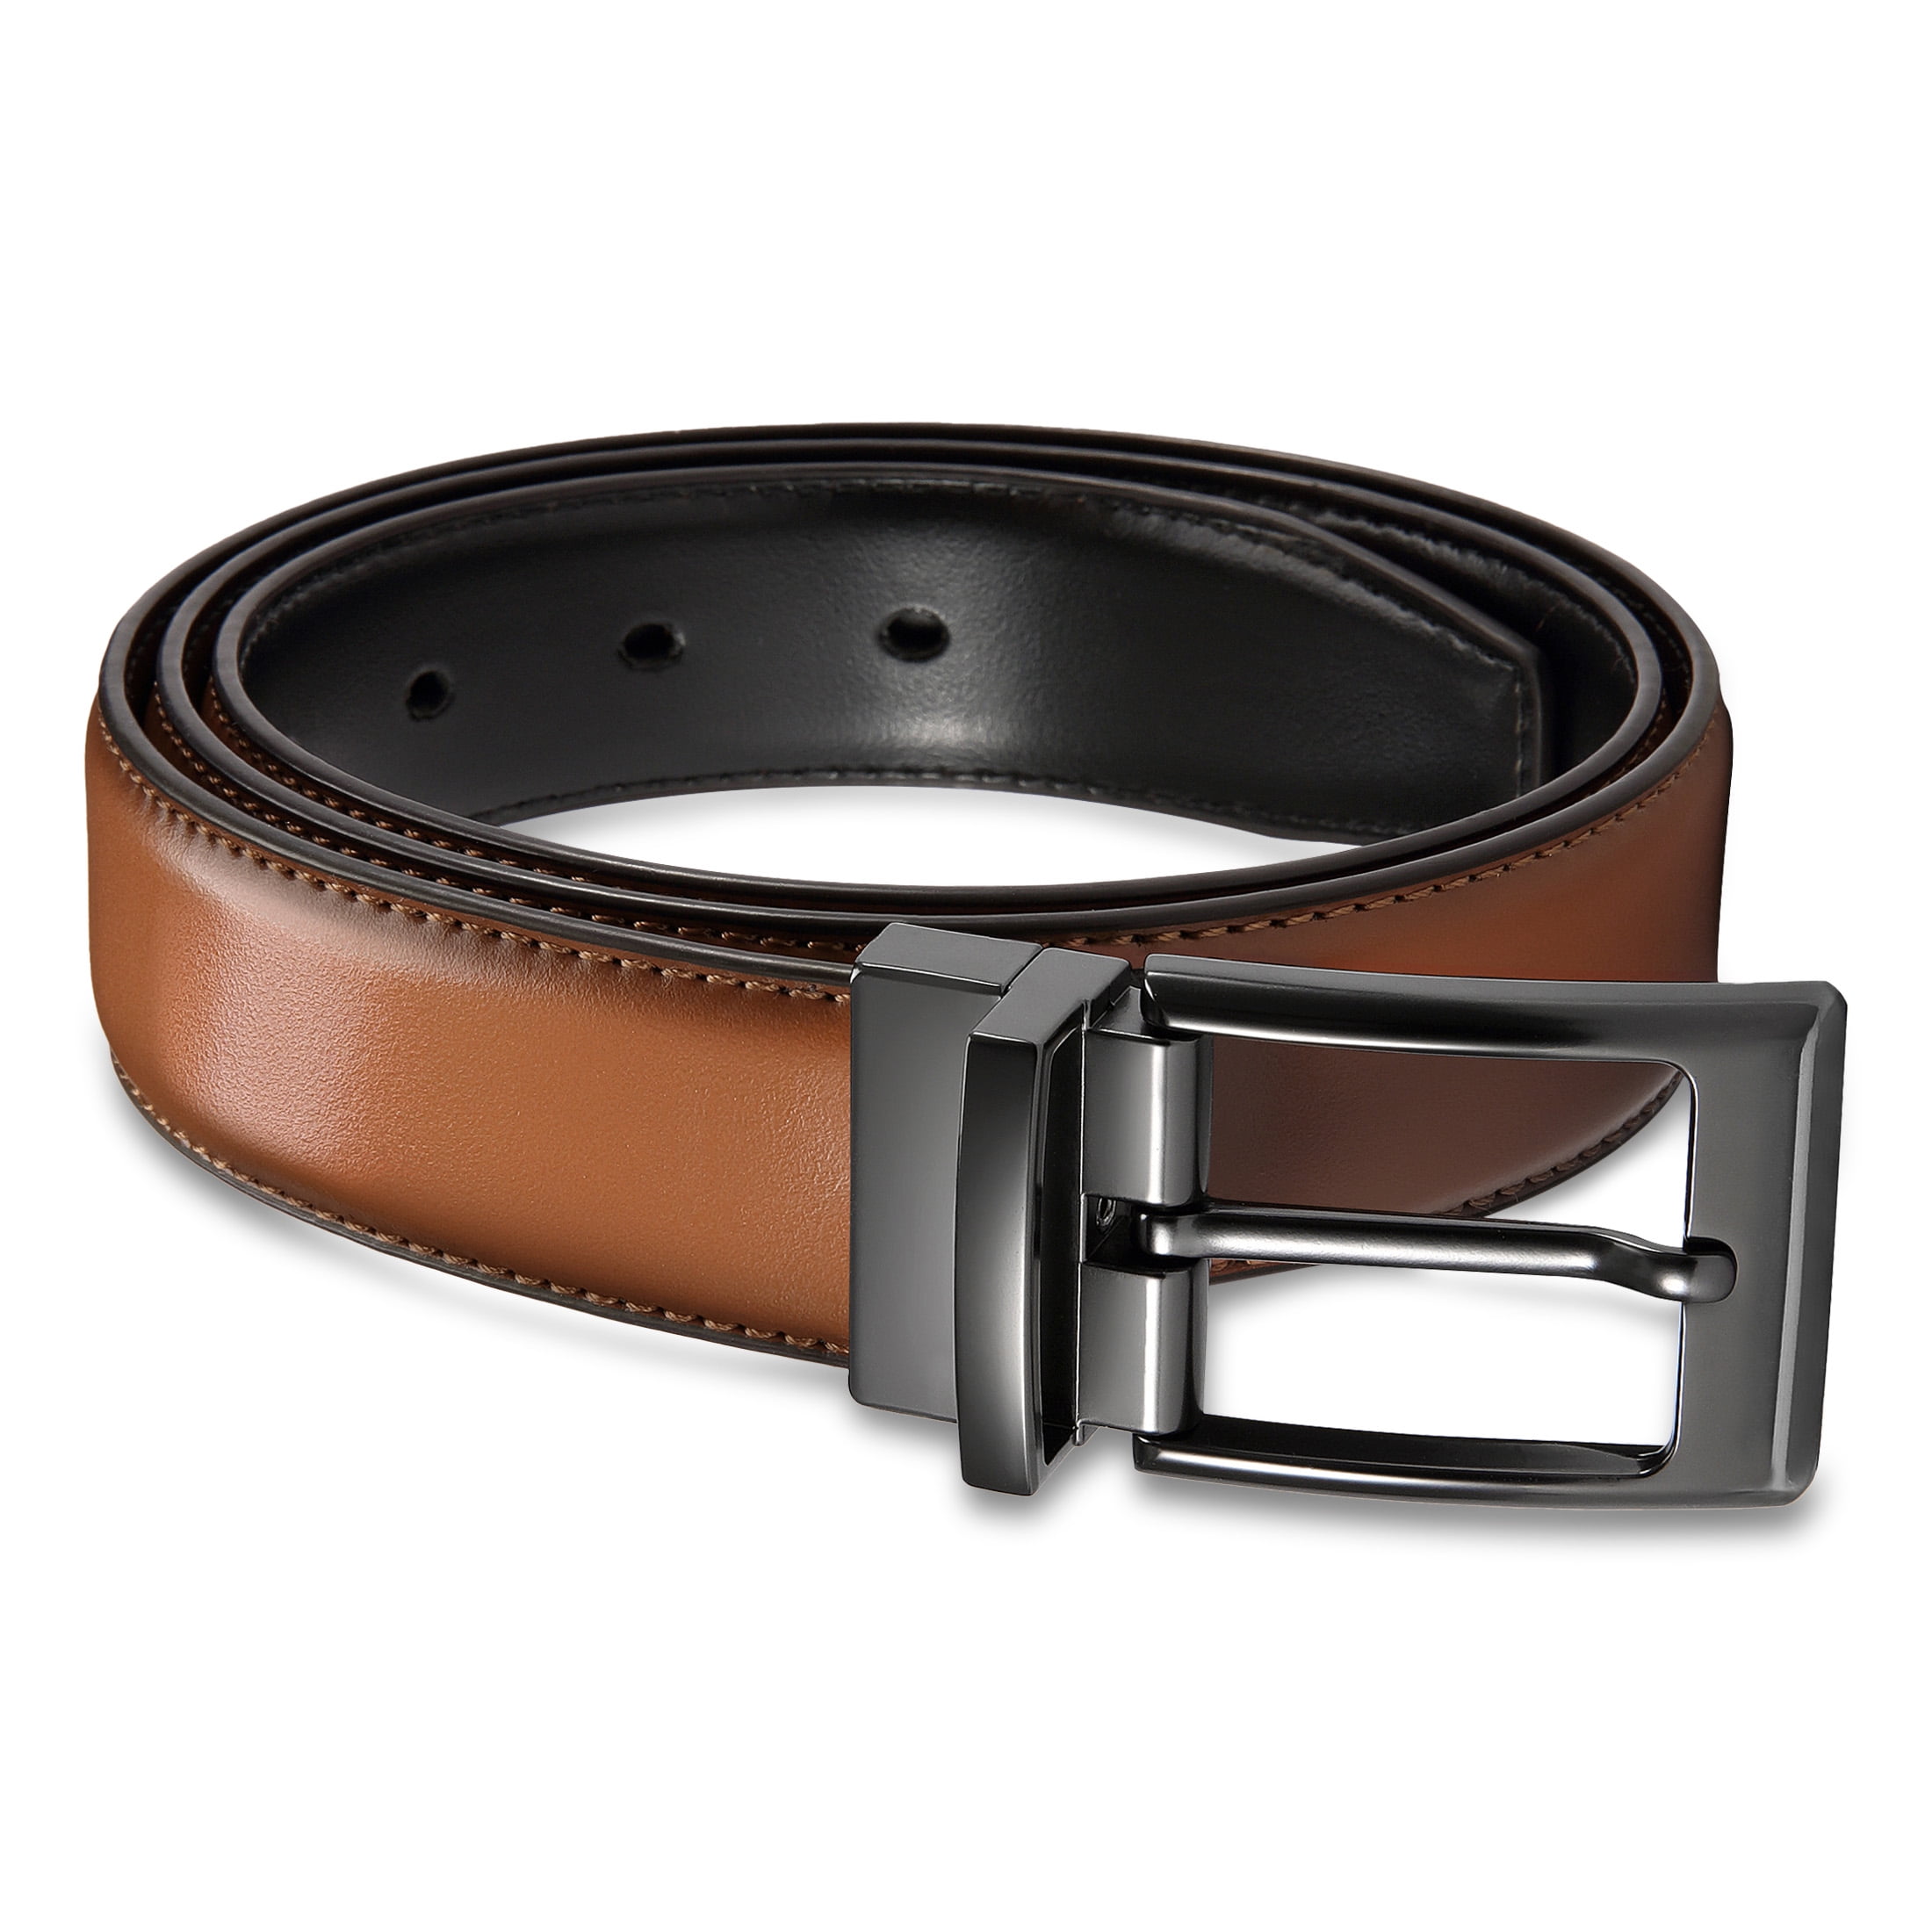 YOETEY Leather Reversible Belt for Men - Dress Casual Belt 1 1/4 ...